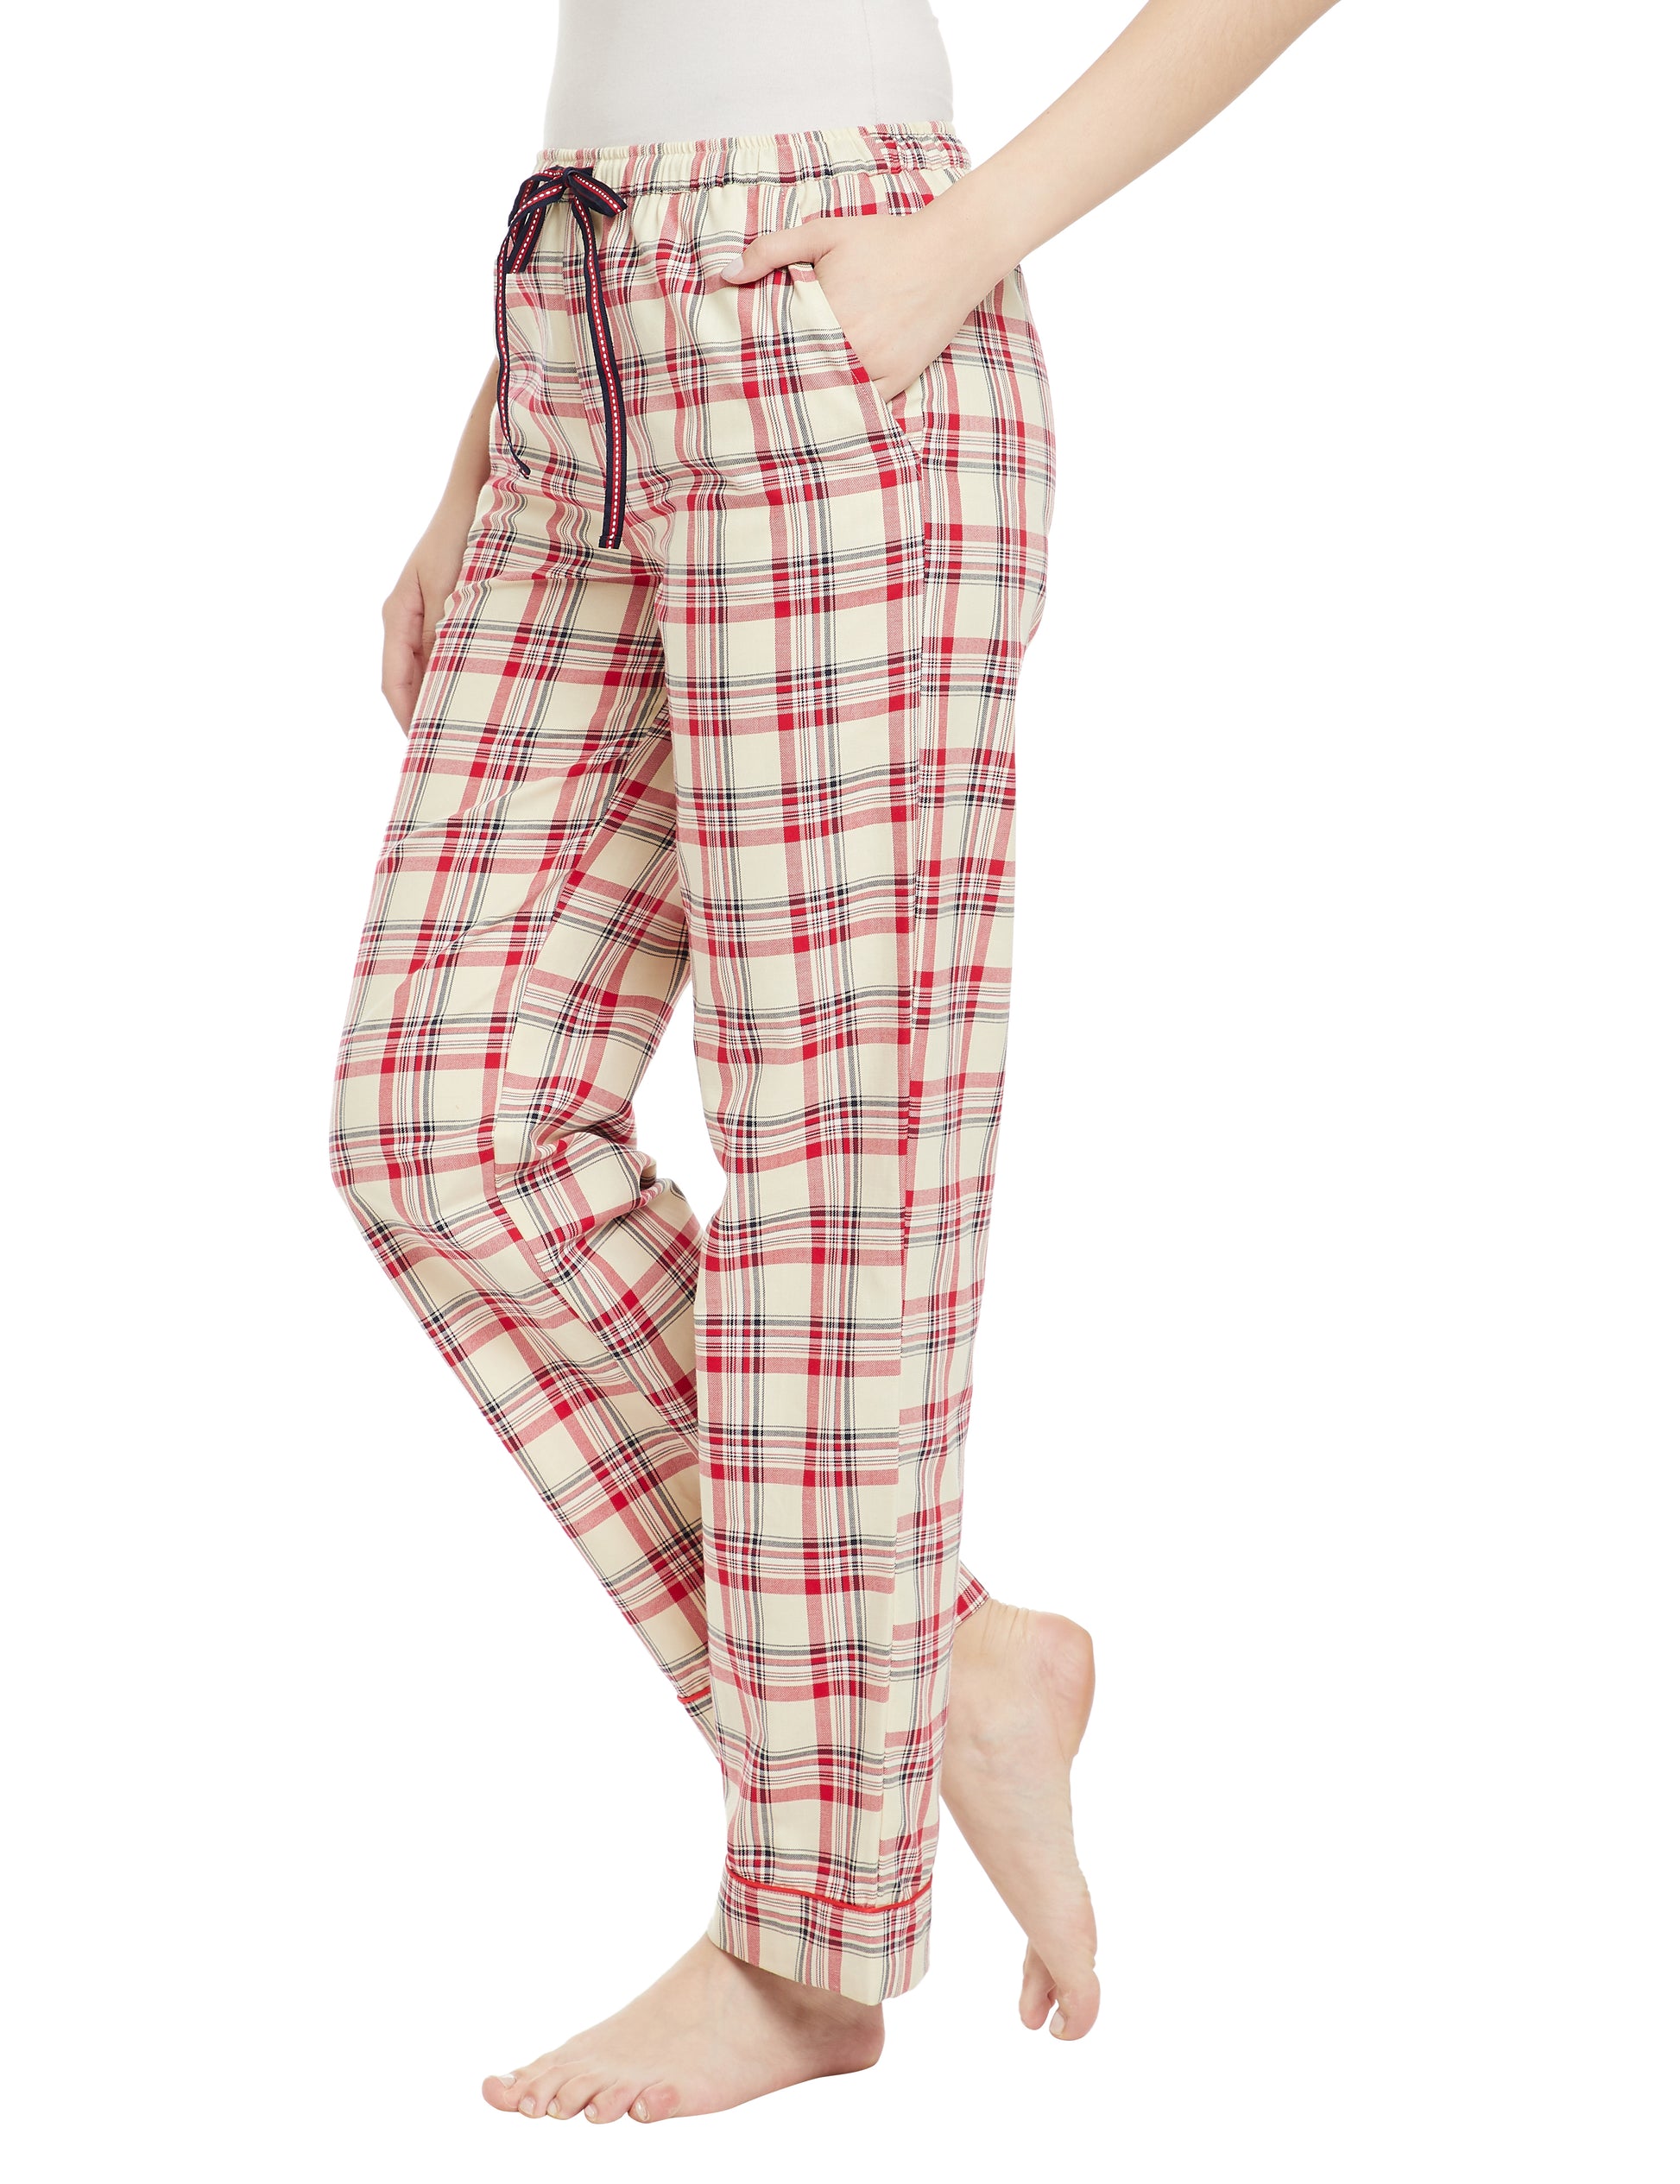 Laura Cotton lightweight Sleep Pyjamas  5.00 Indigo Paisley